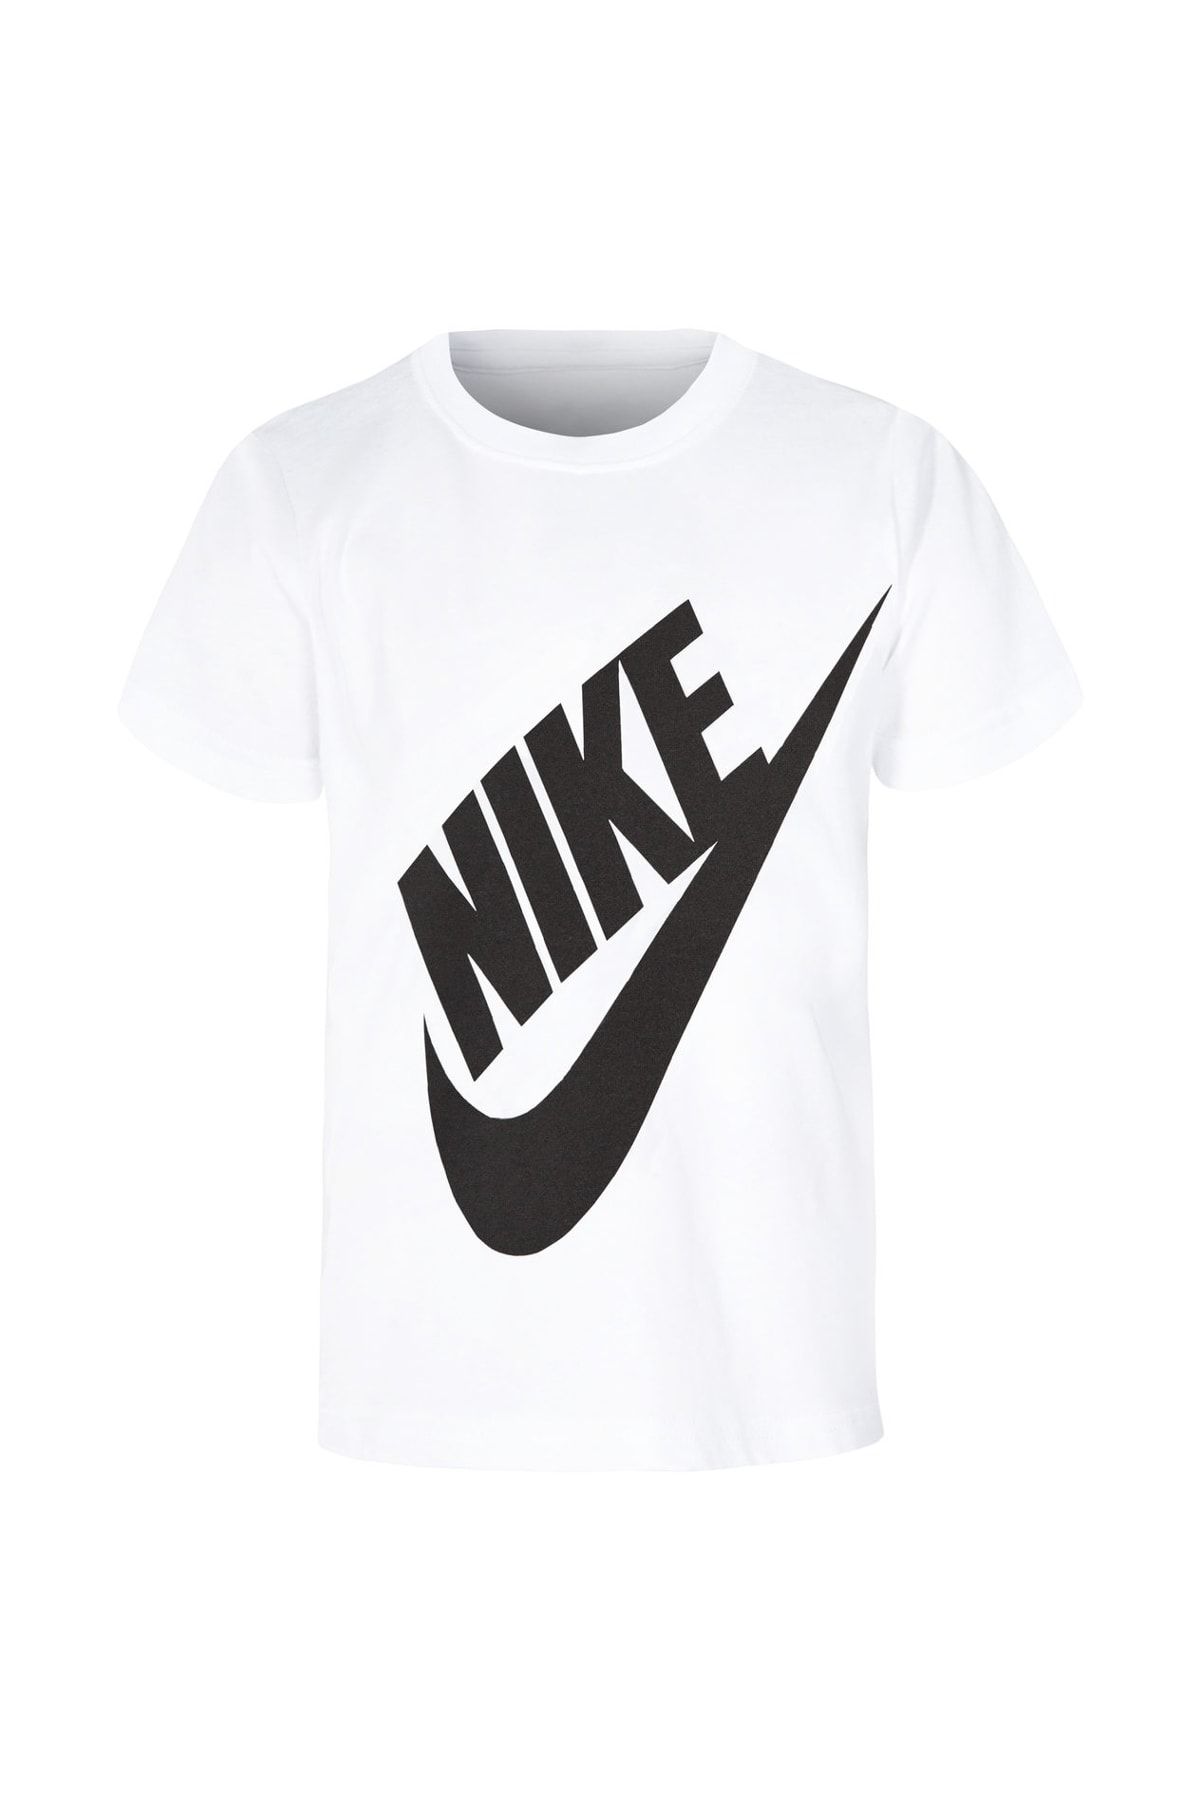 Nike Beyaz Unisex Çocuk T-Shirt